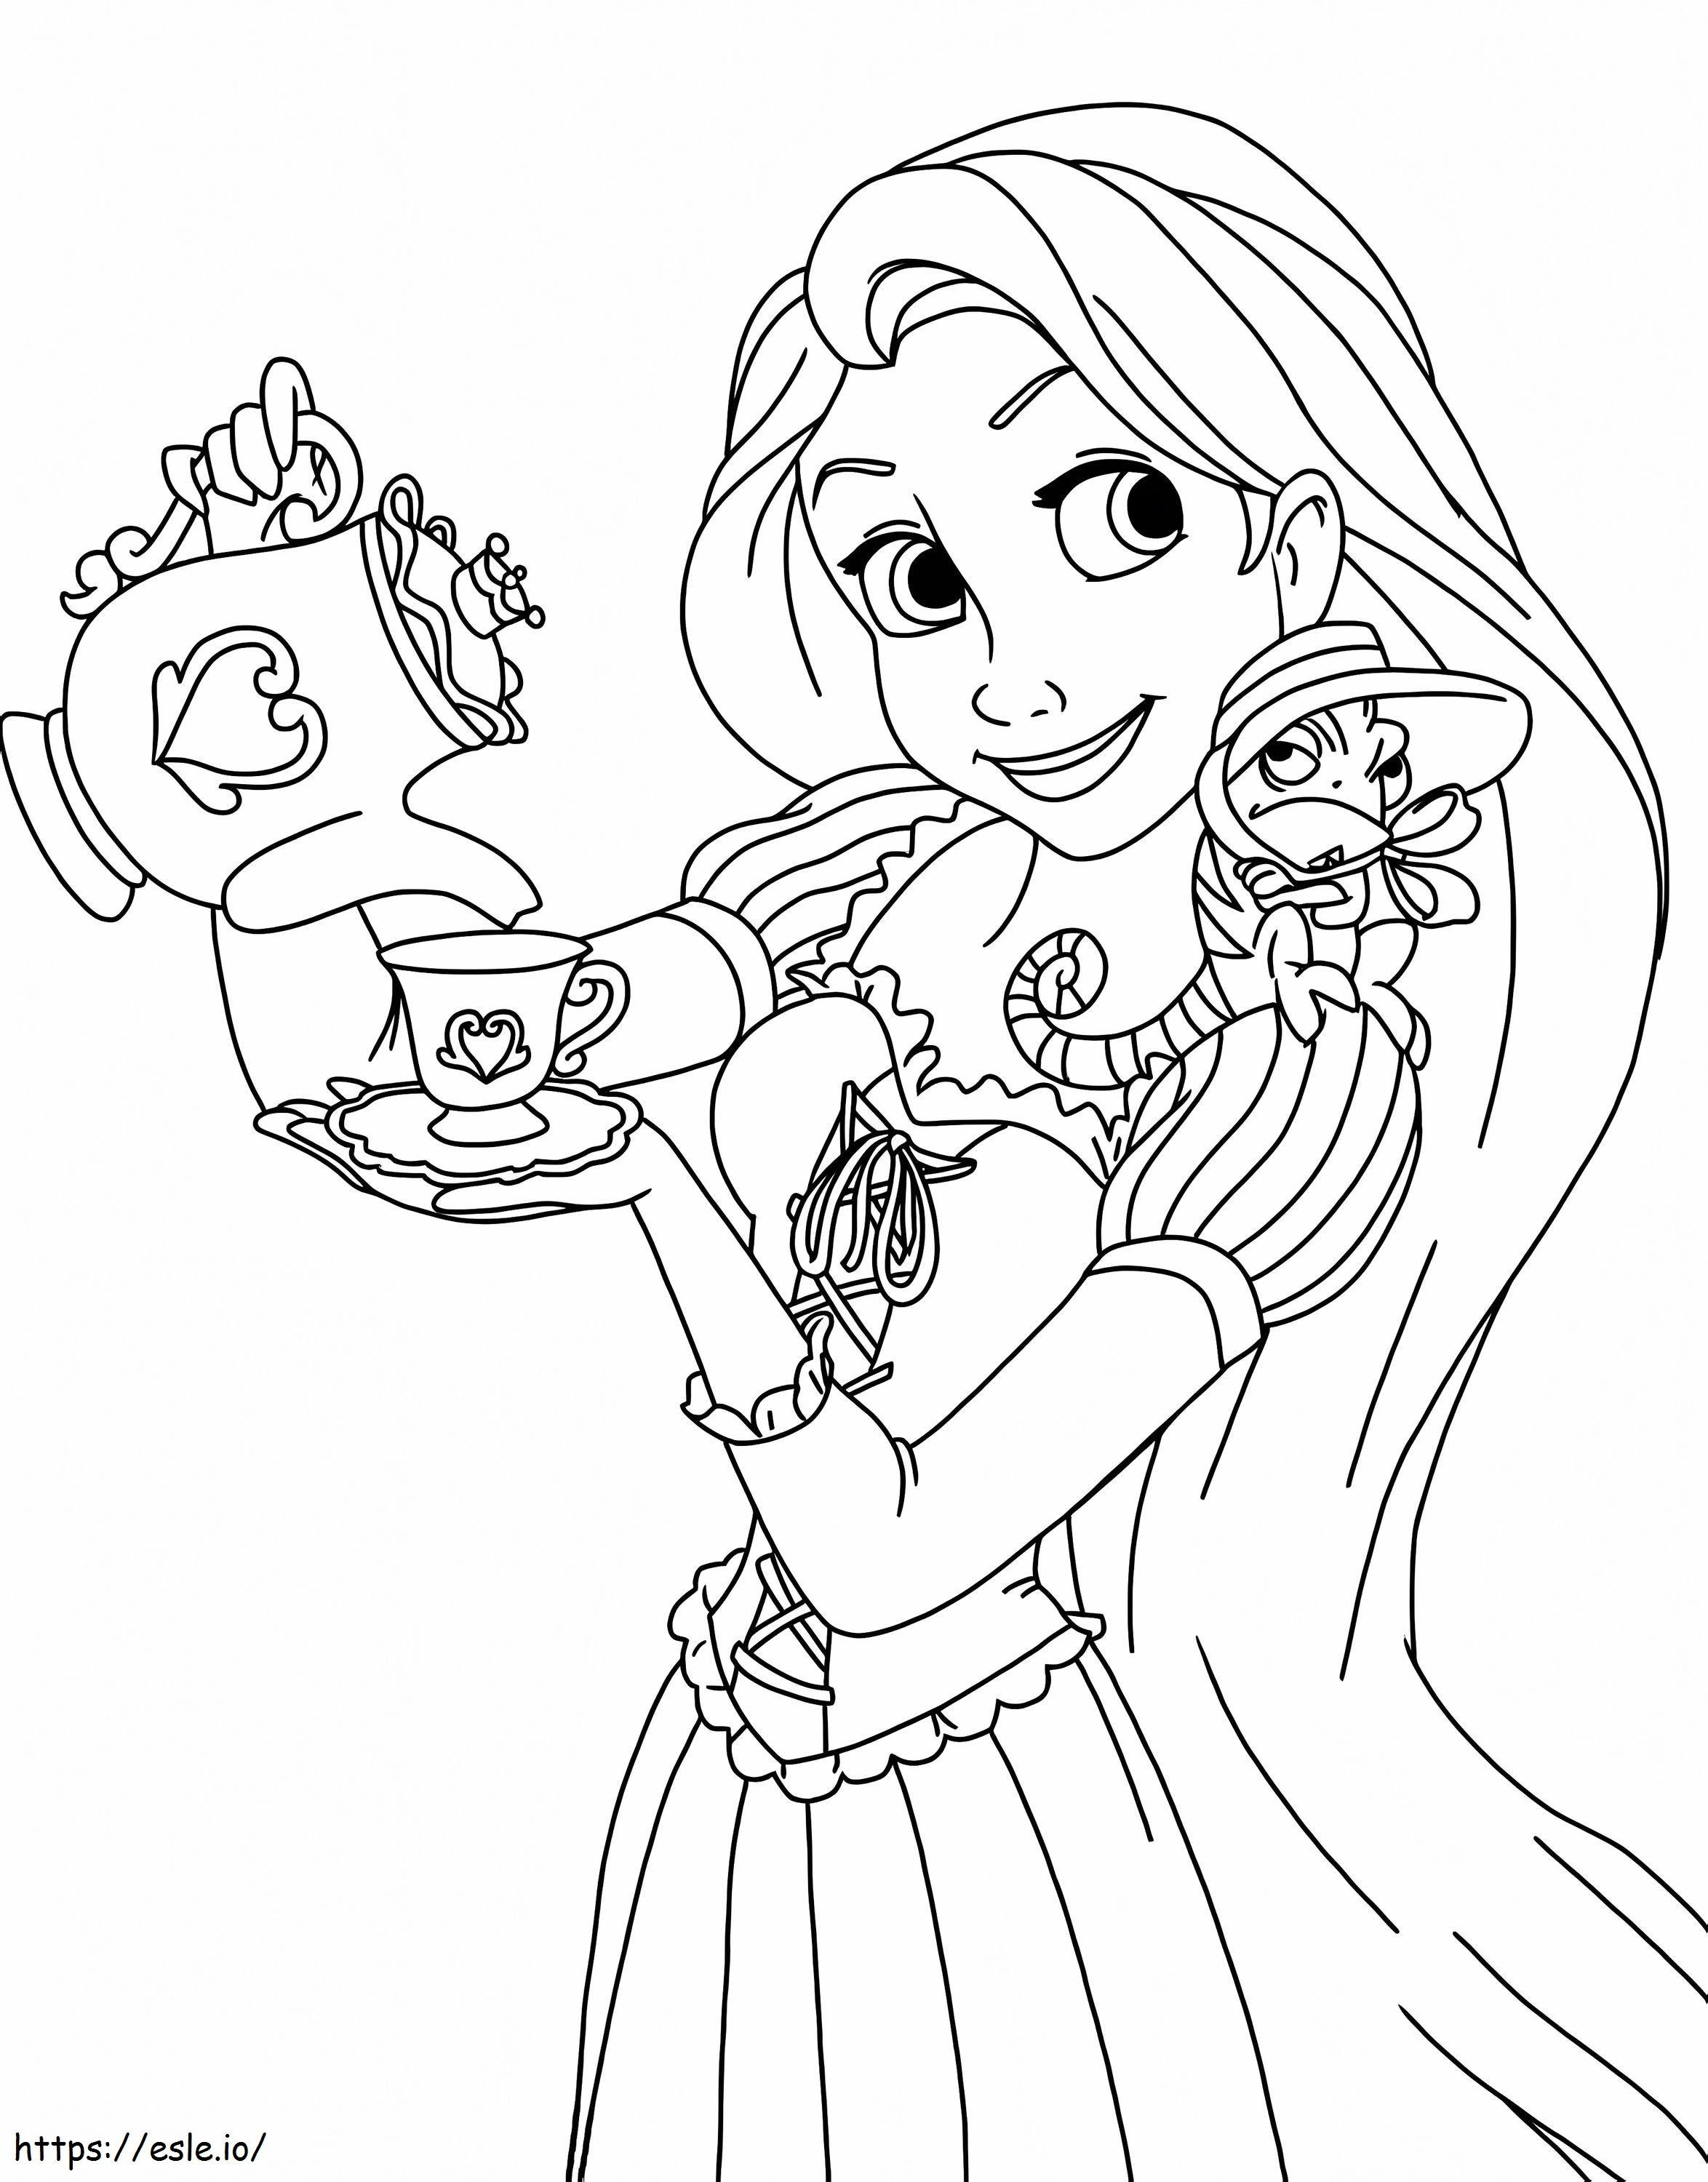 Princess Rapunzel Having Tea coloring page